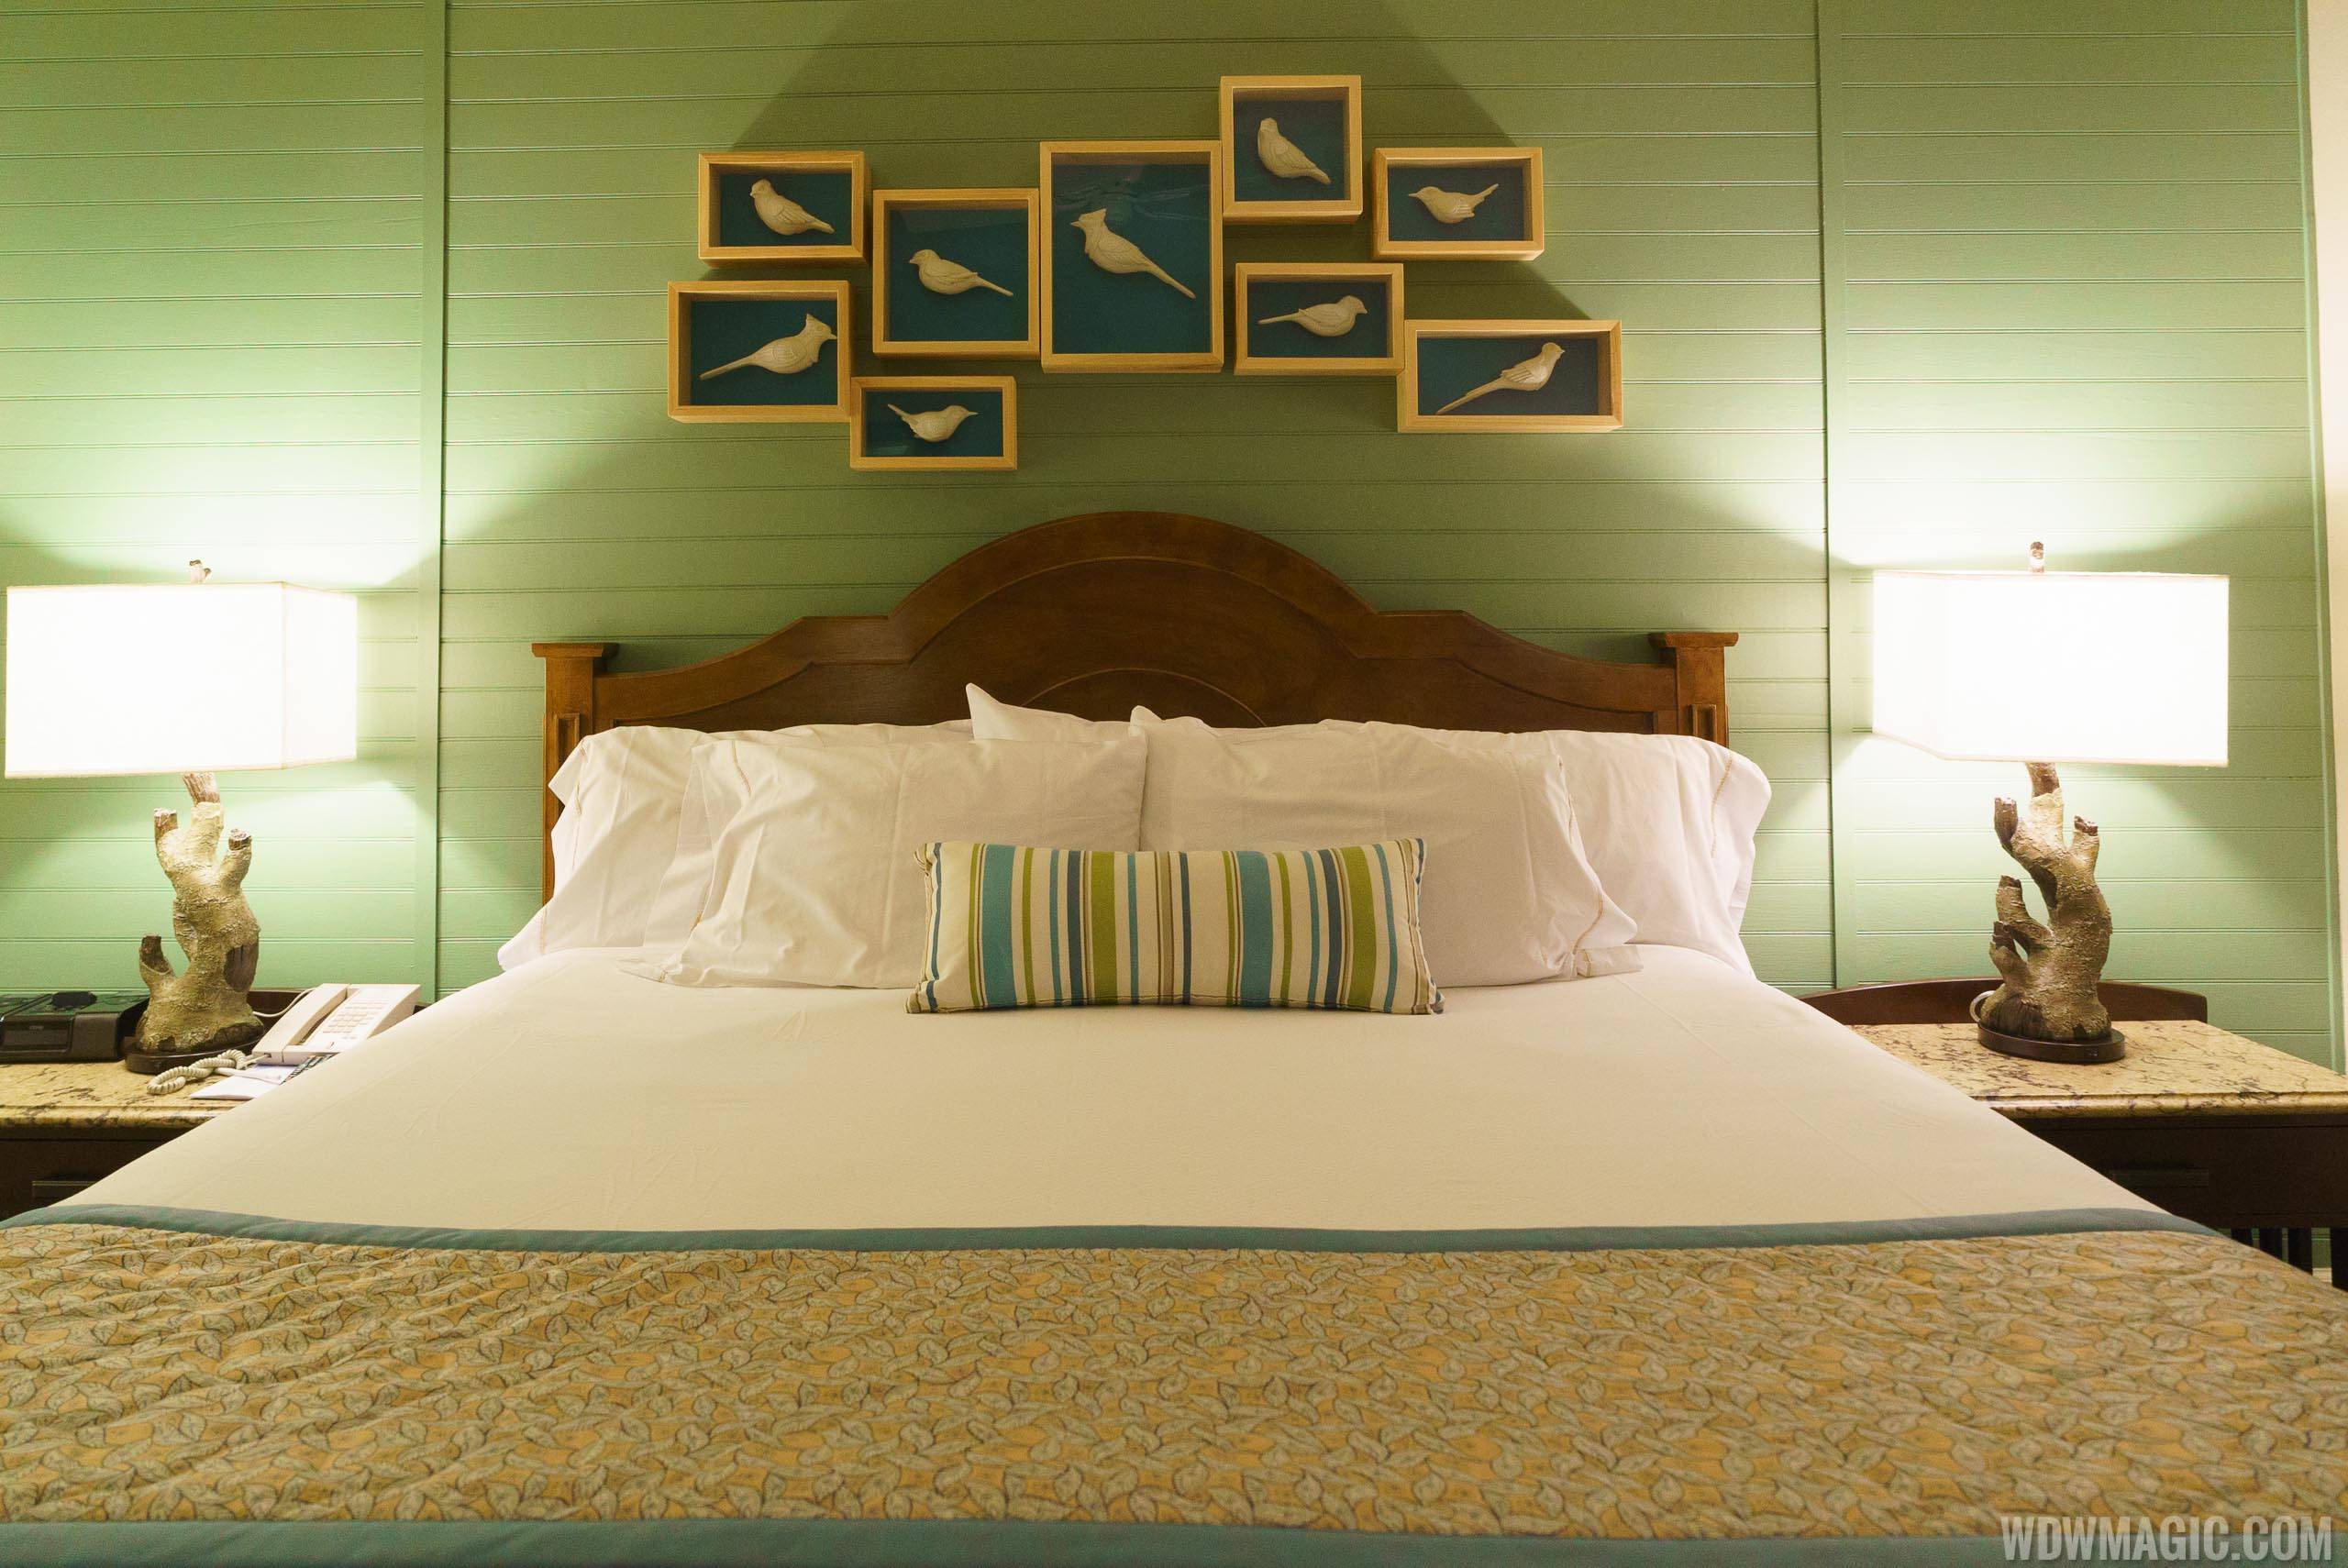 Disney's Hilton Head Island Resort - 2 Bedroom Suite Master Bedroom